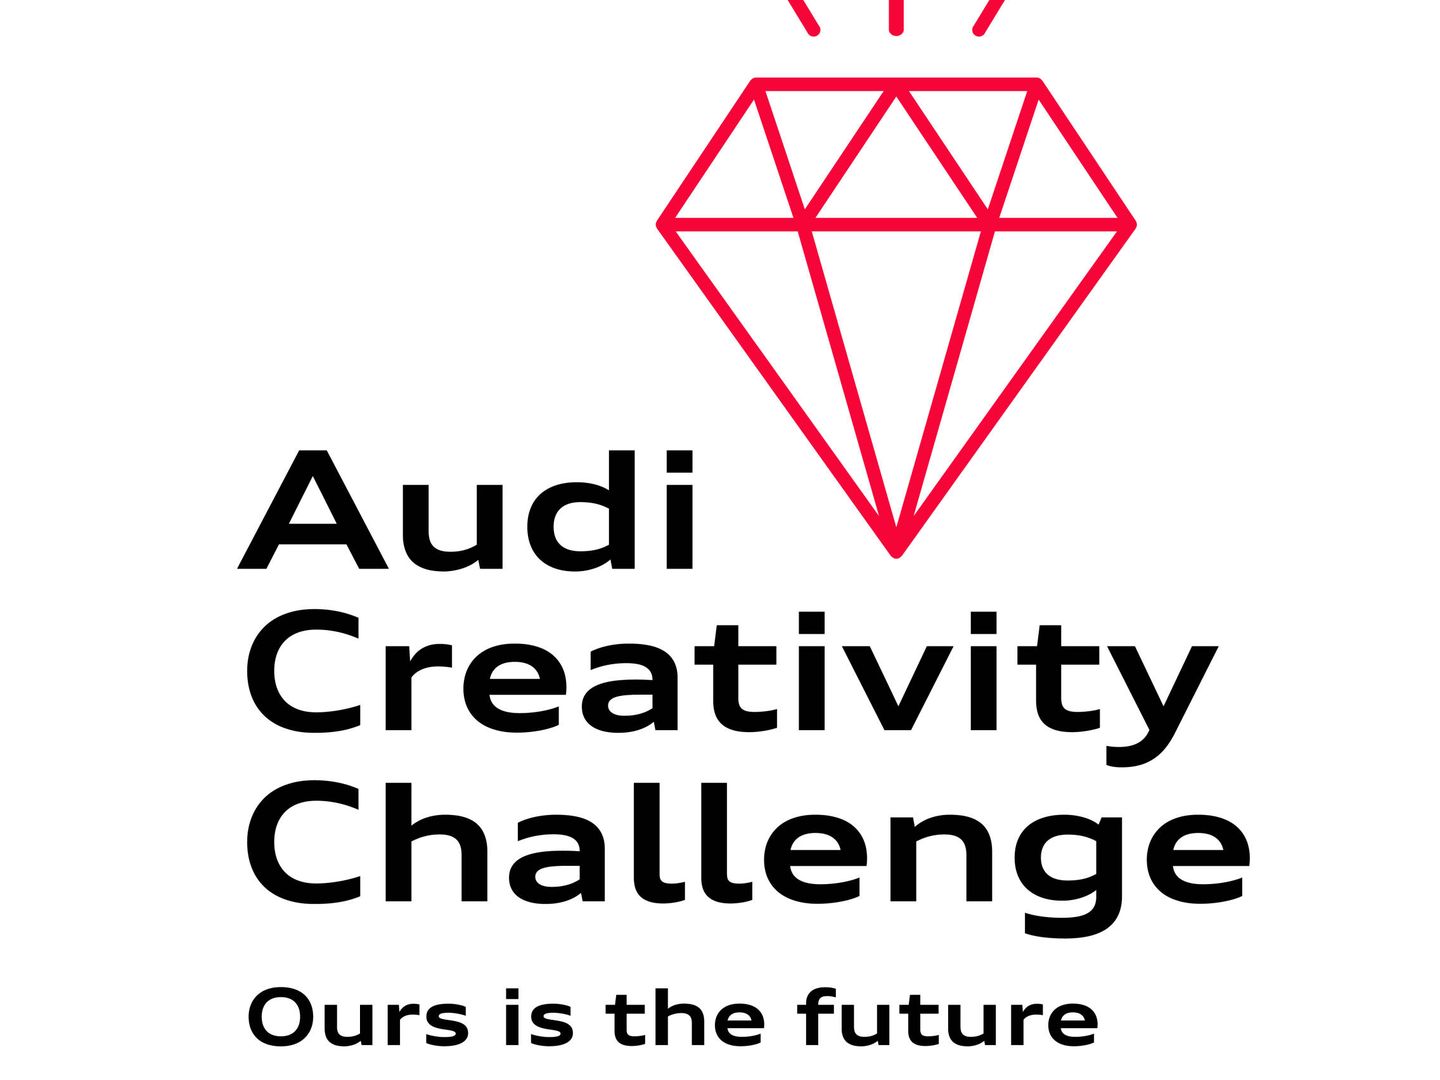 El nuevo logotipo de la iniciativa Audi Creativity Challenge conserva el diamante, como símbolo del talento.